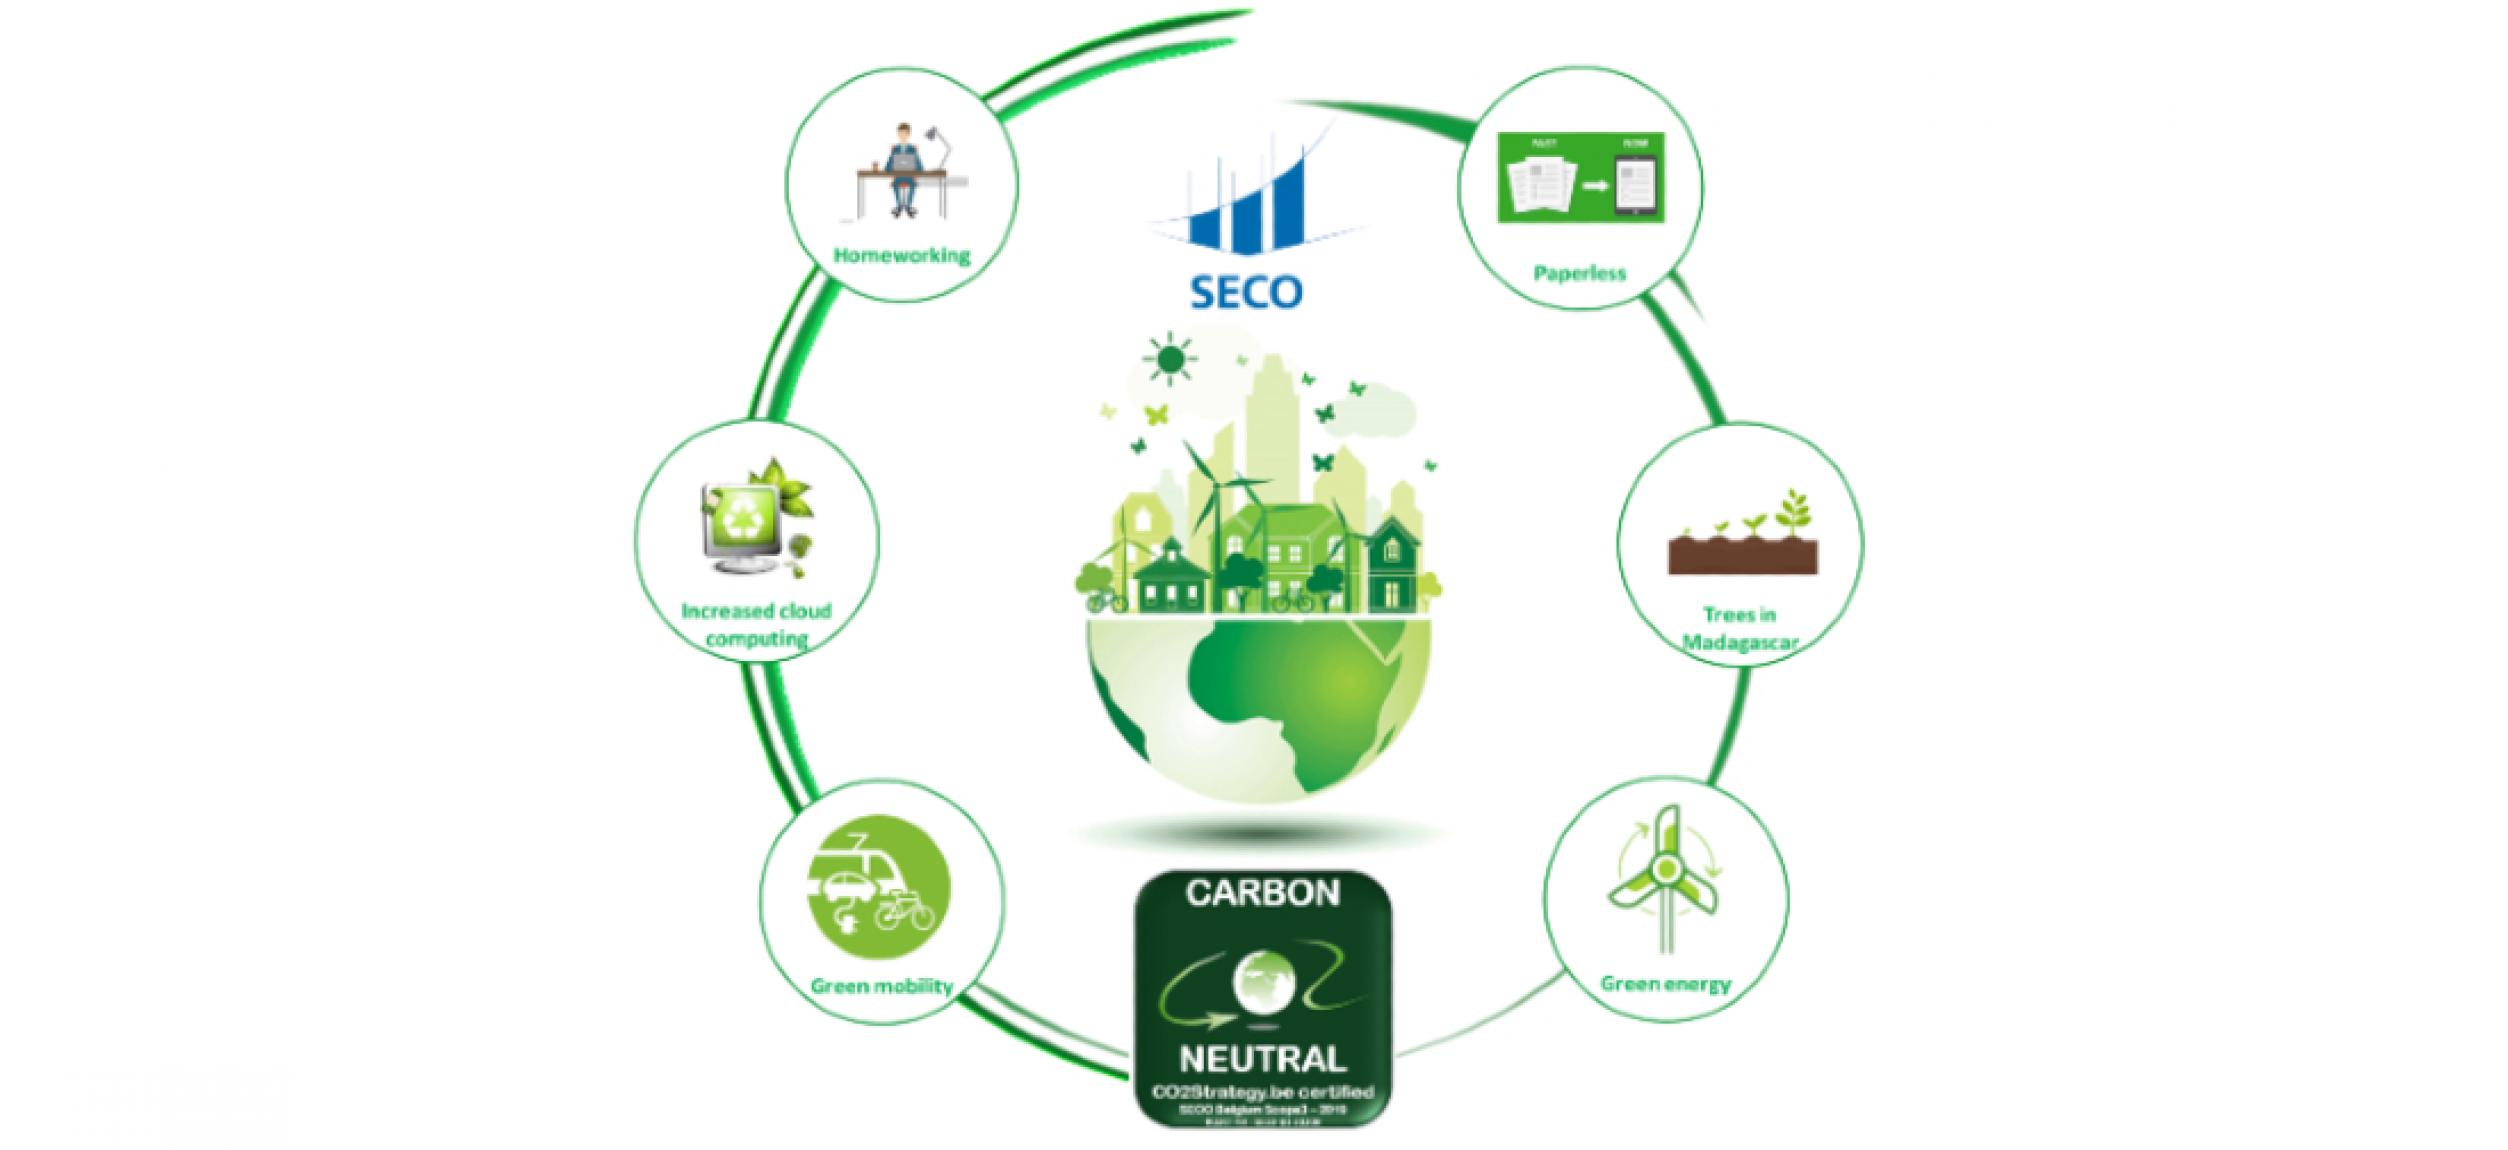 SECO Luxembourg, suite à son bilan carbone 2019, a compensé ses émissions carbone et est maintenant Carbon Neutral.  